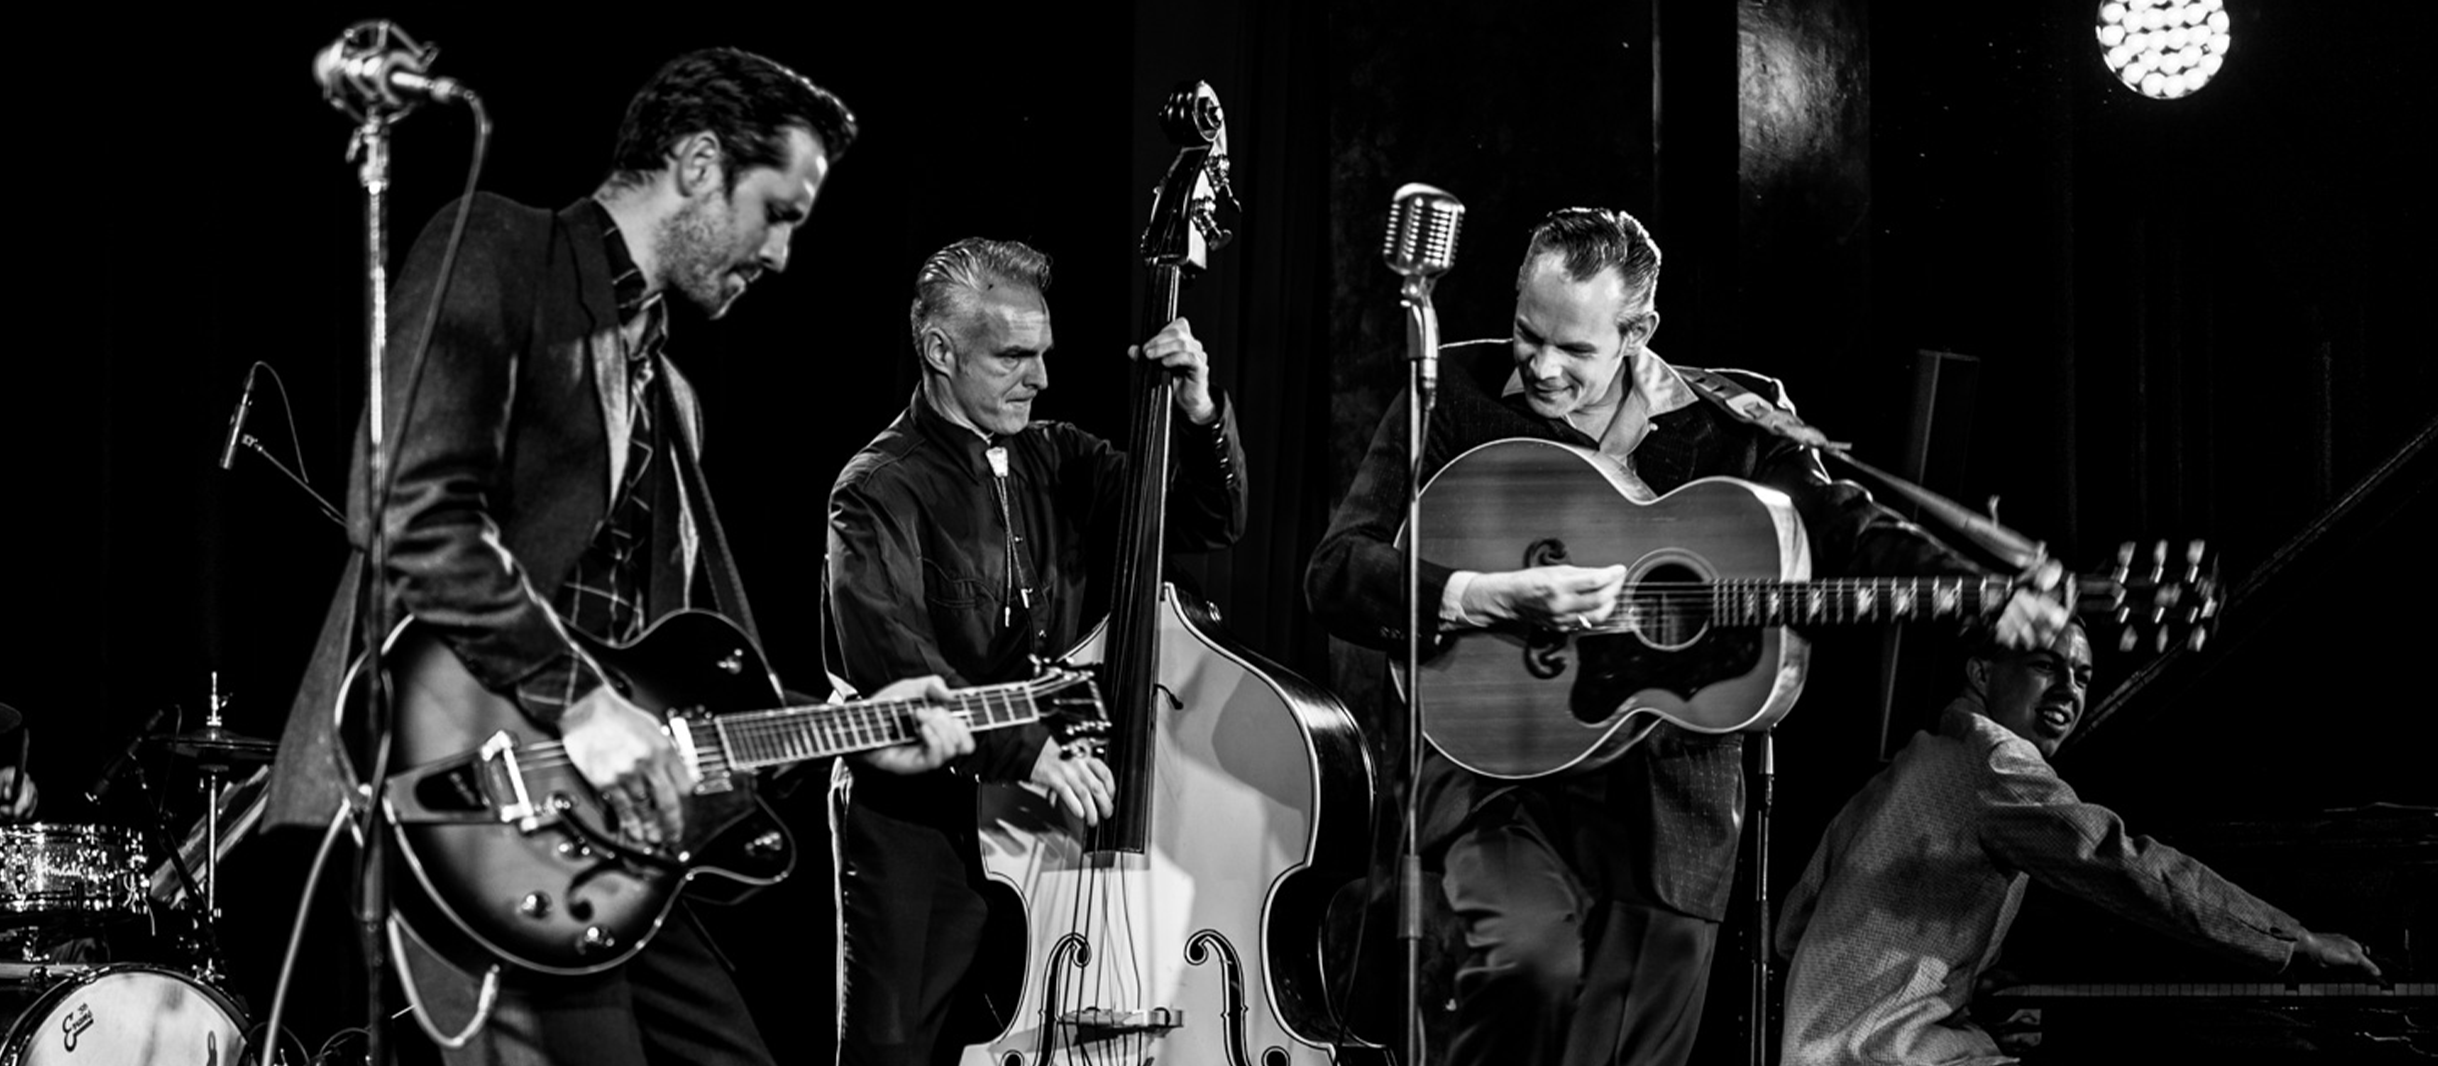 Chris Aaron and the Croakers mit Gitarre und Kontrabas auf einem schwarz-weiß Bild